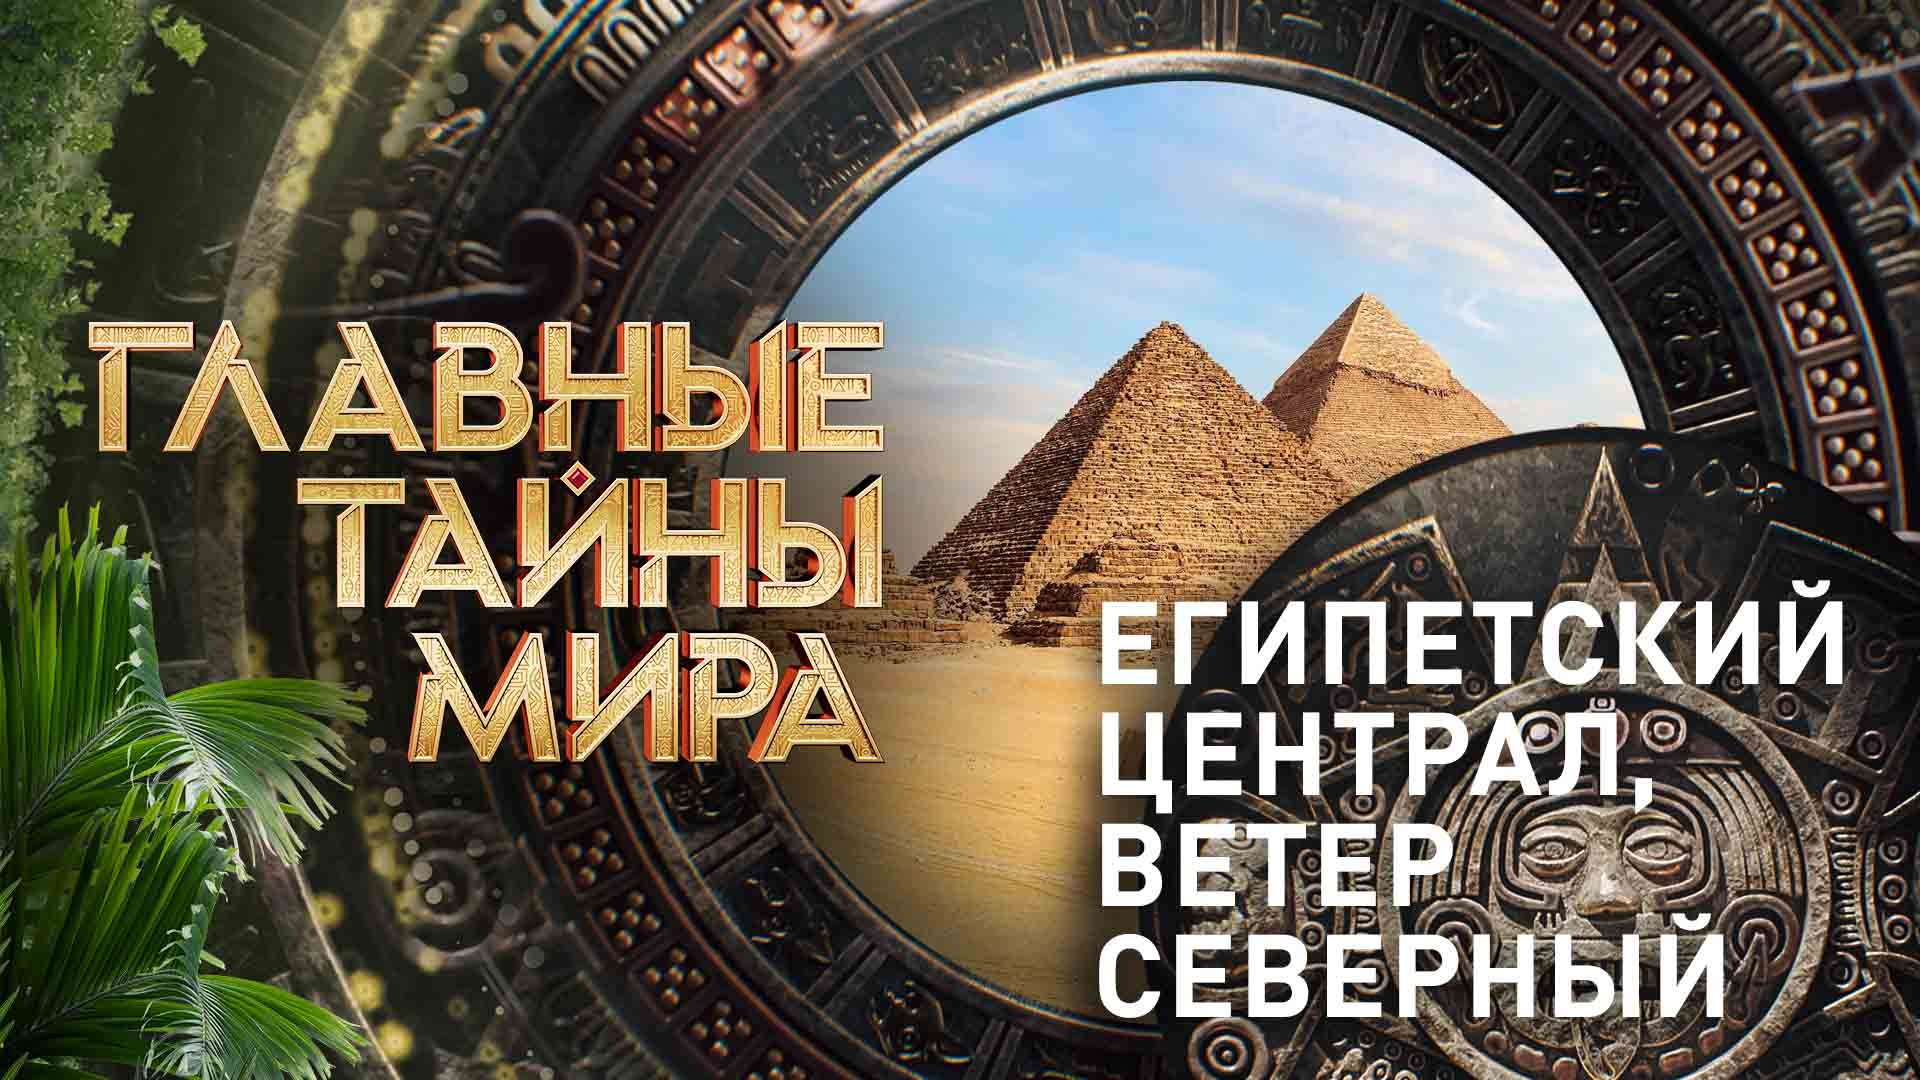 Главные тайны мира  Египетский централ, ветер северный  (24.11.2023)